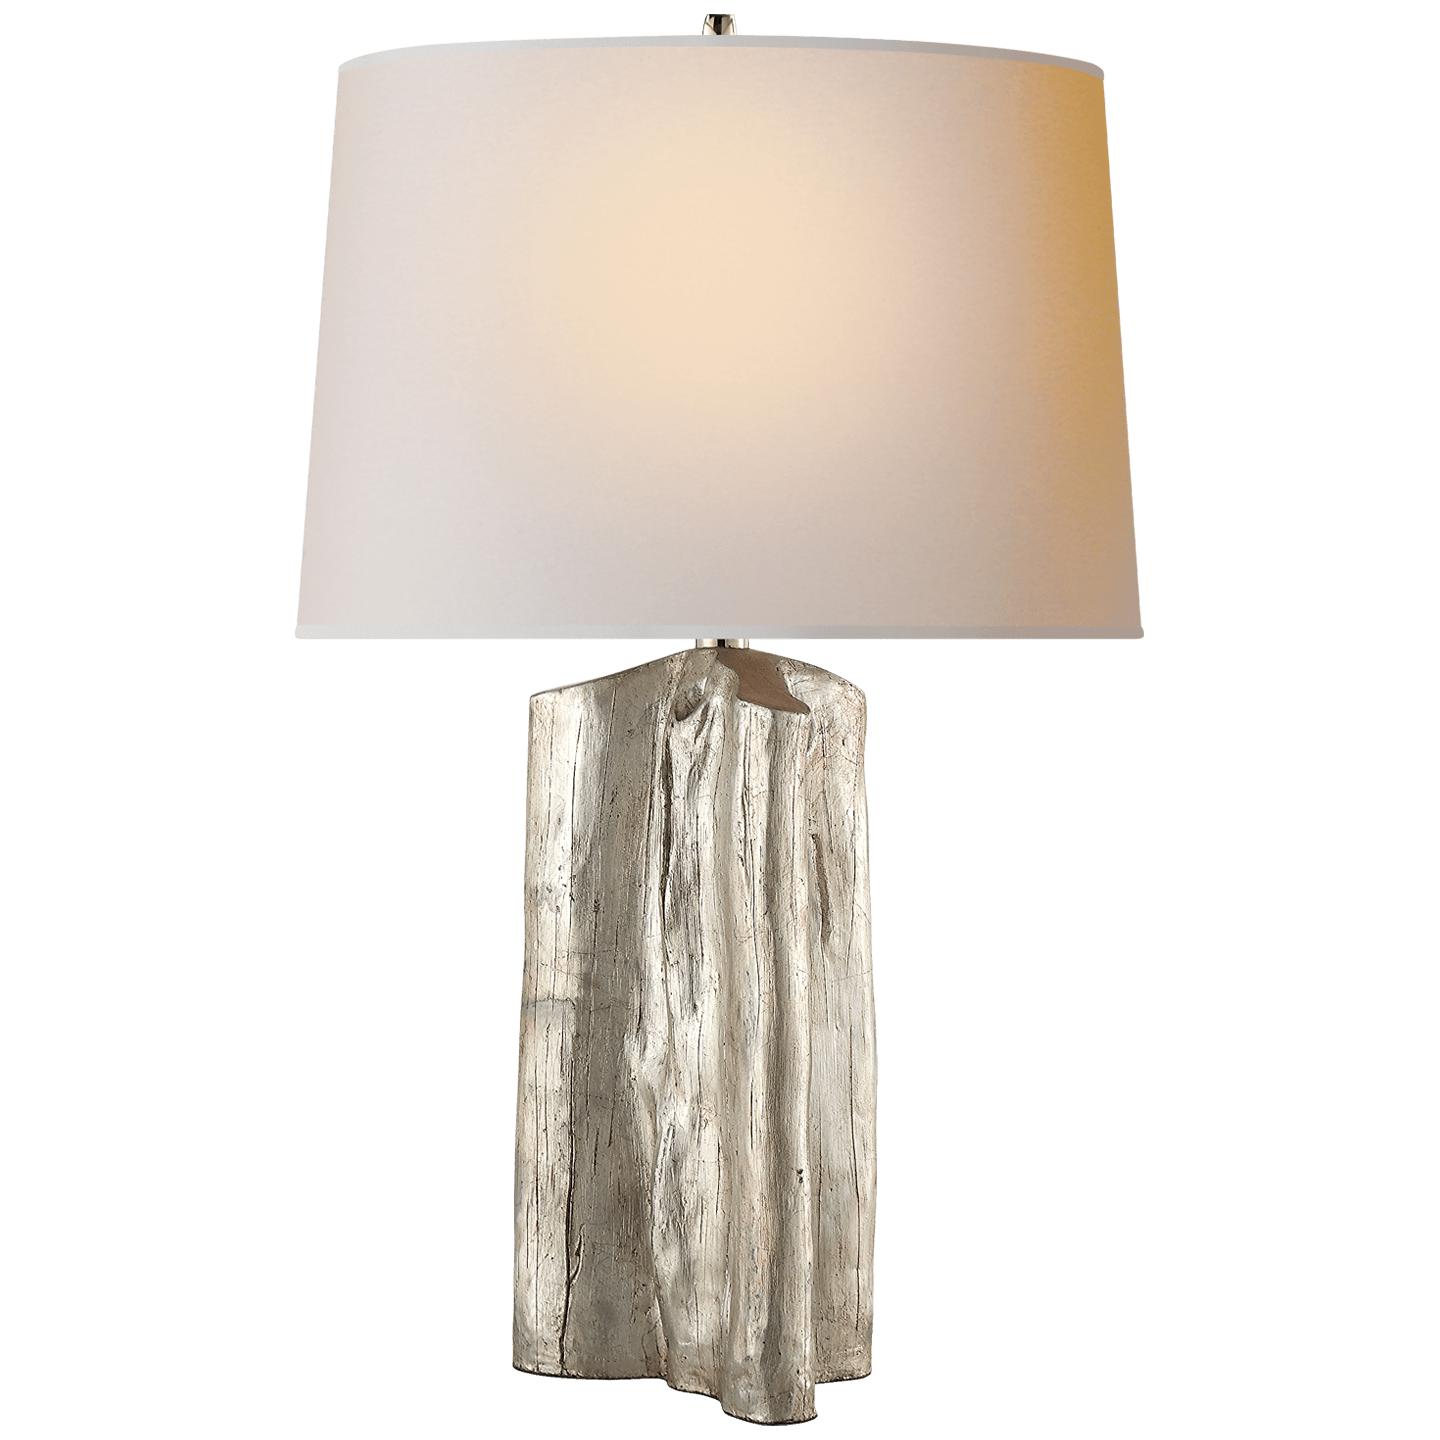 Купить Настольная лампа Sierra Buffet Lamp в интернет-магазине roooms.ru